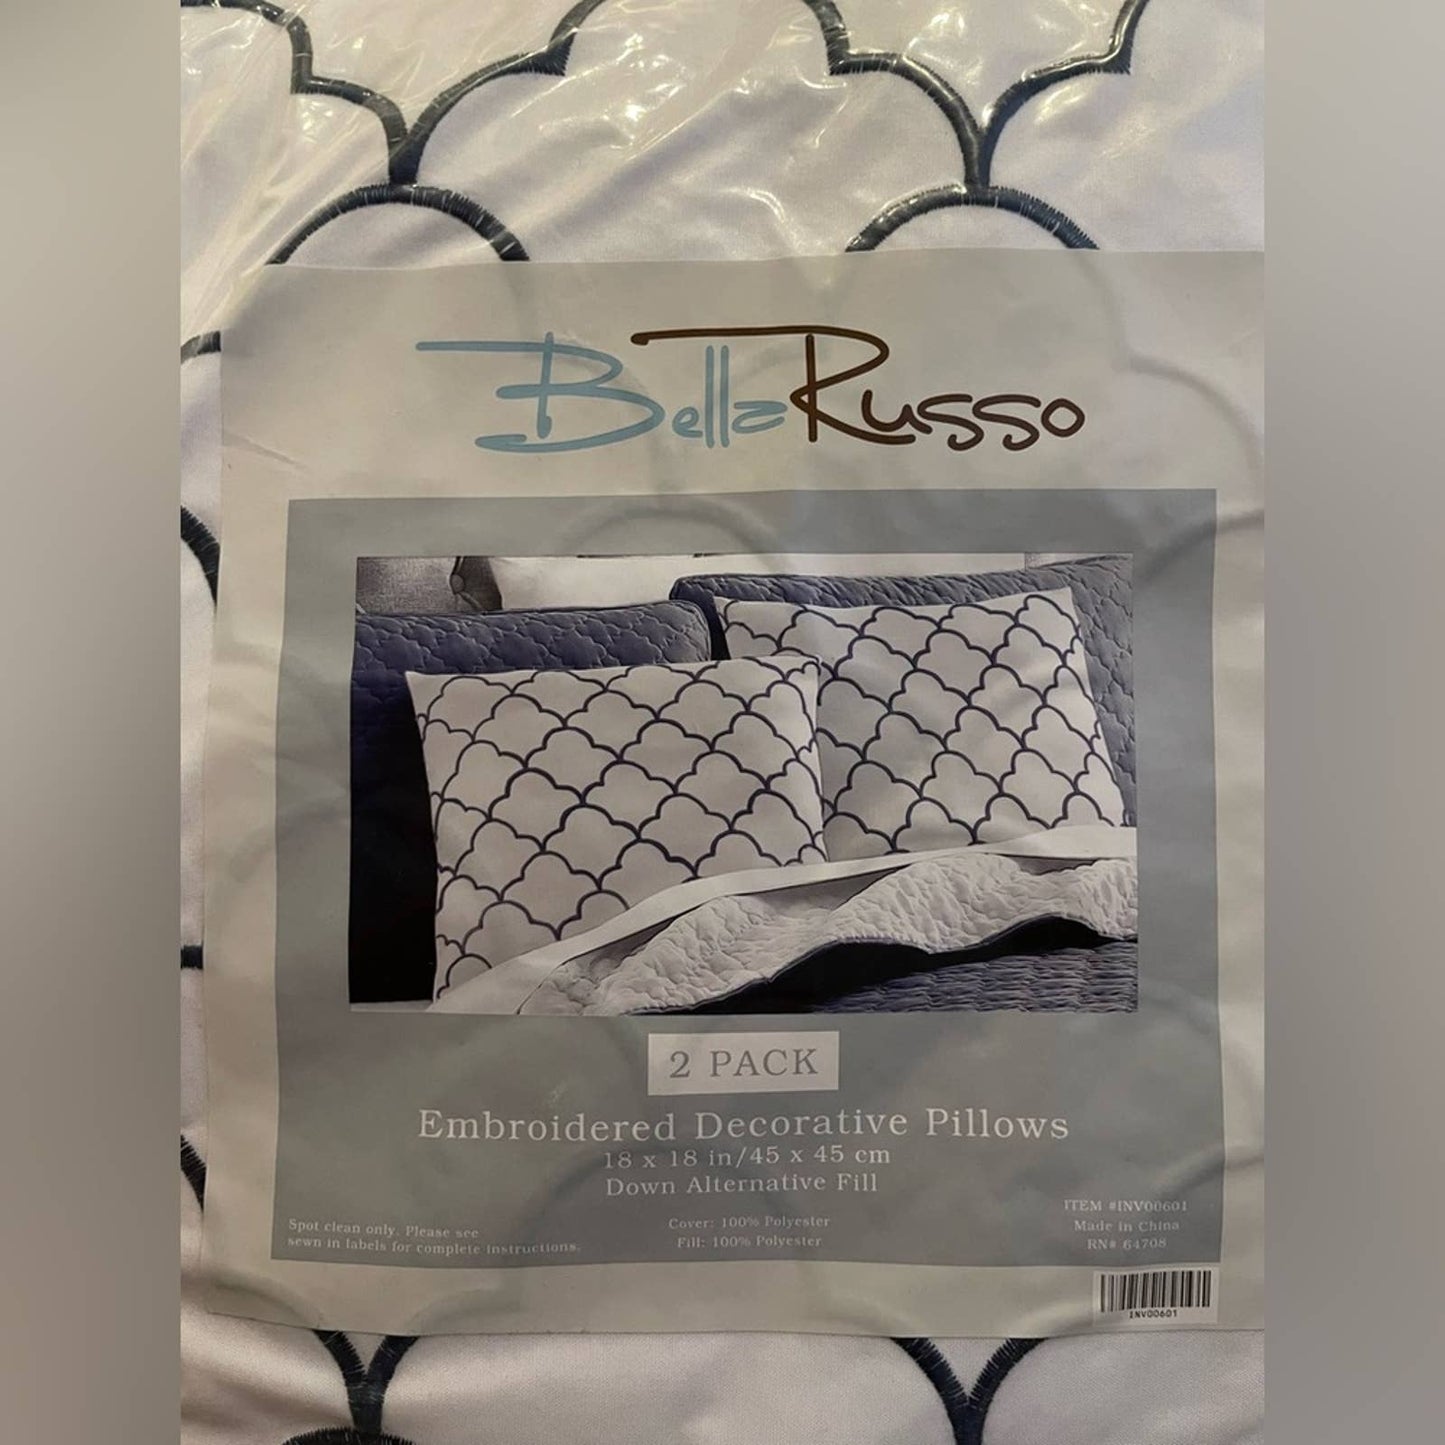 Bella Russo 2PK Decorative Pillows